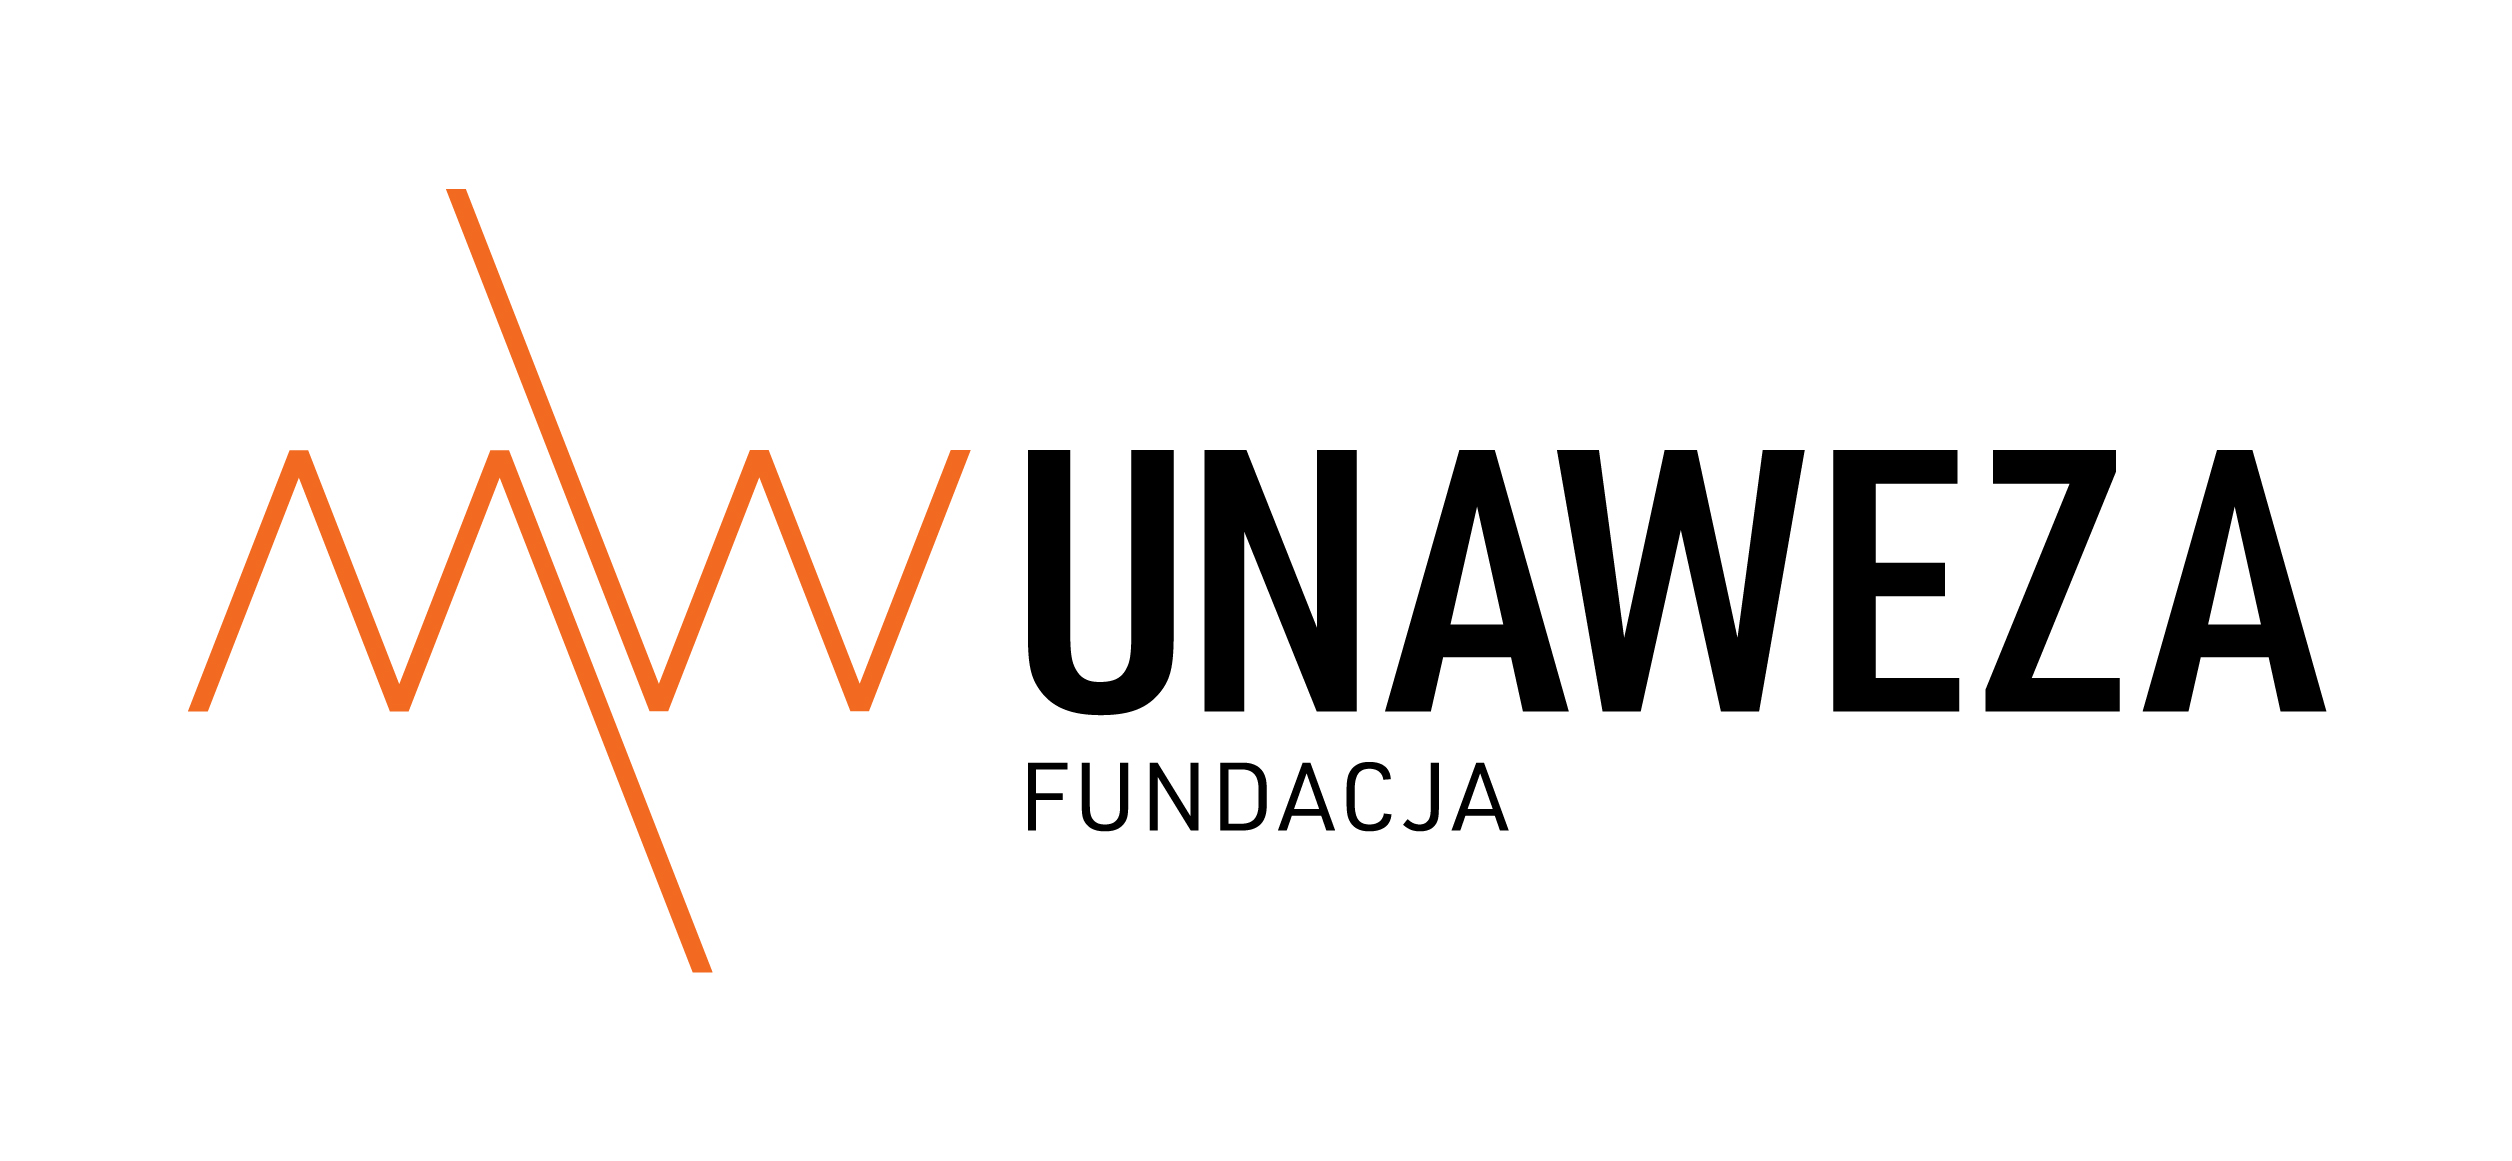 Fundacja UNAWEZA